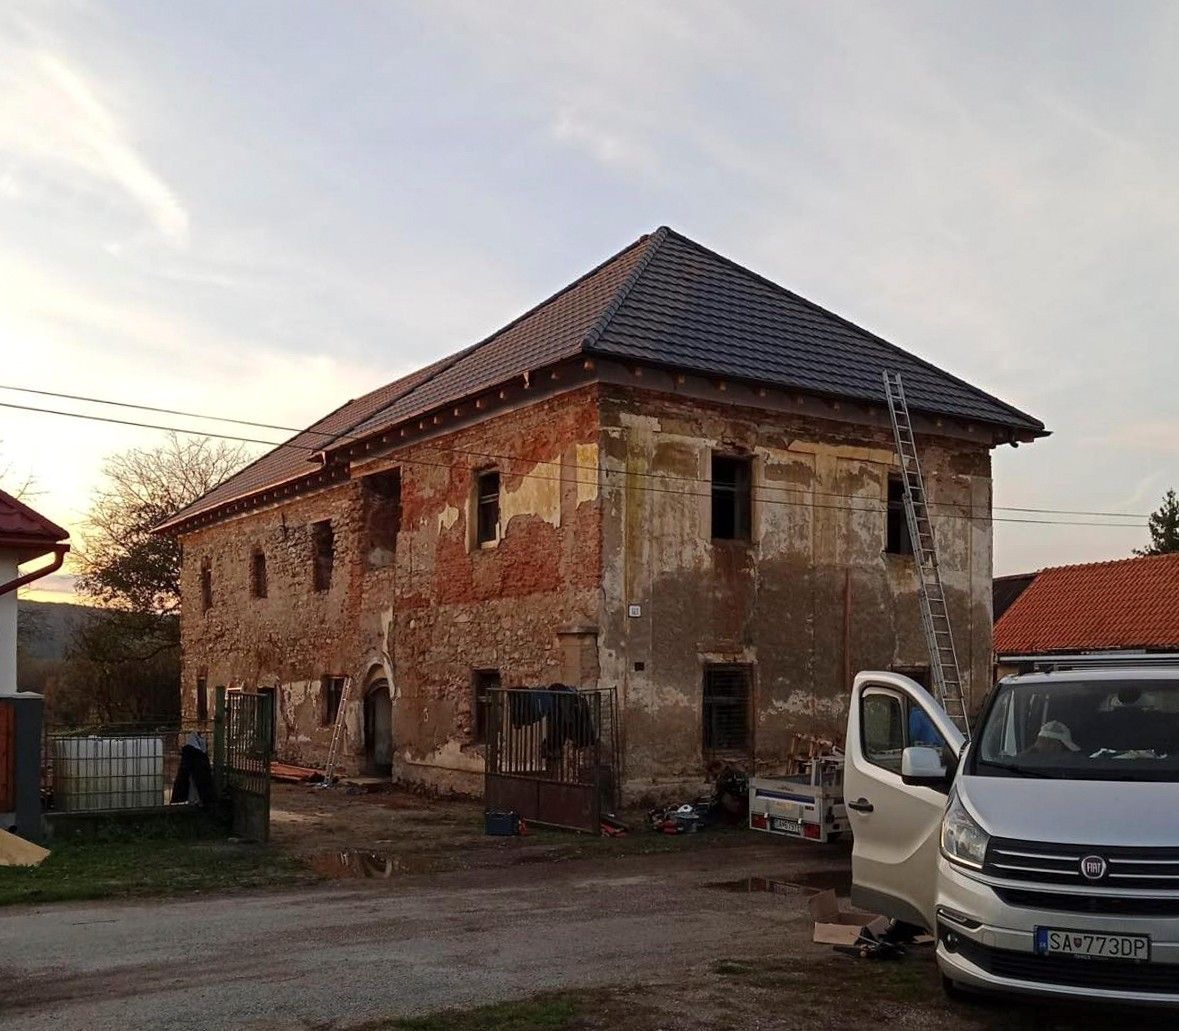 Fotos Ruina de una casa señorial del Renacimiento tardío en el sur de Eslovaquia